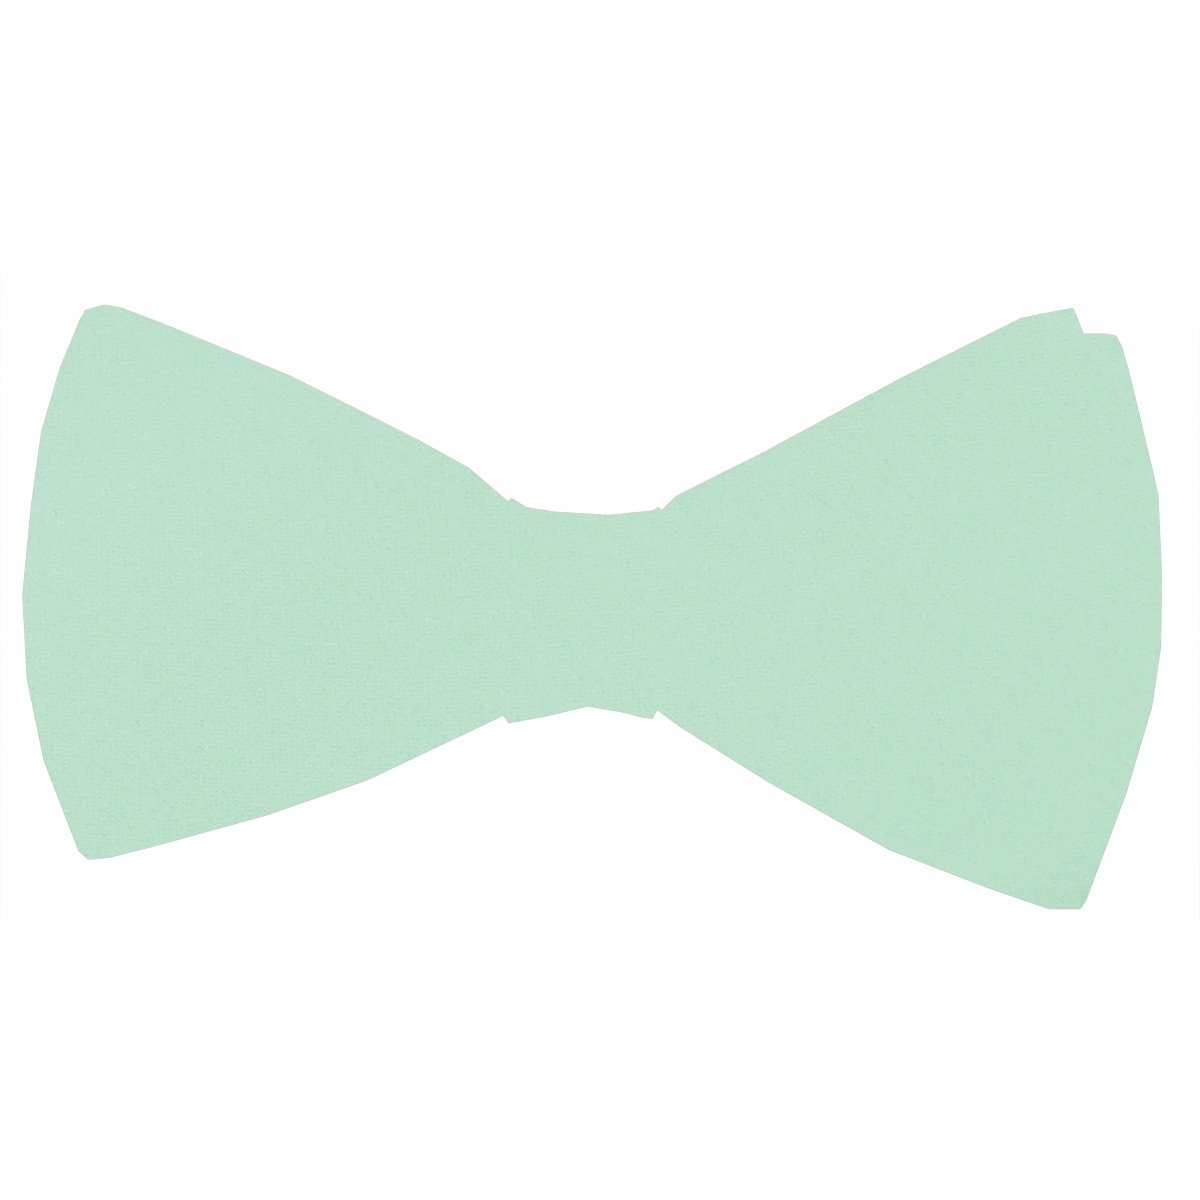 Seafoam Green Bow Tie - Wedding